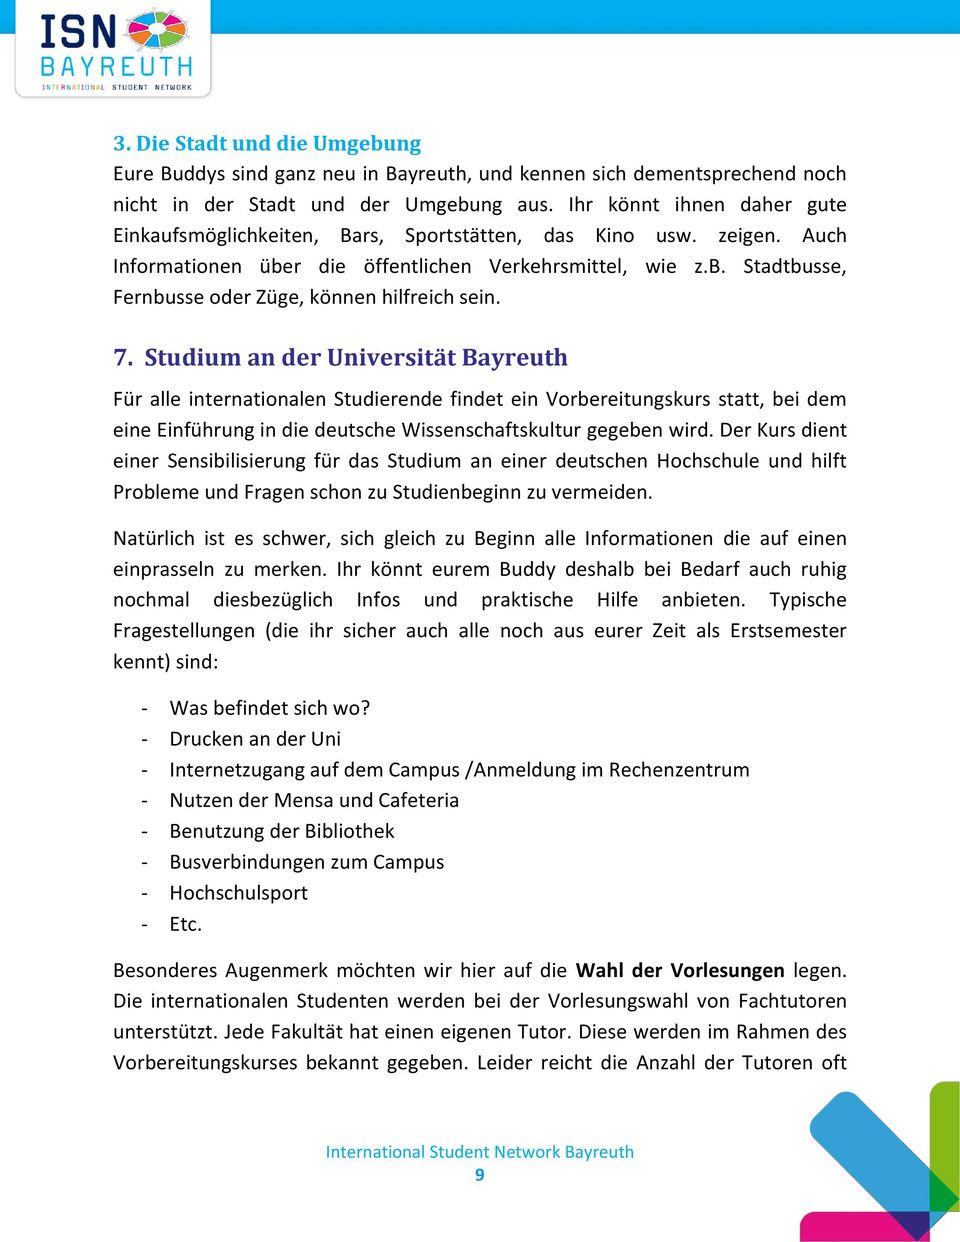 7. Studium an der Universität Bayreuth Für alle internationalen Studierende findet ein Vorbereitungskurs statt, bei dem eine Einführung in die deutsche Wissenschaftskultur gegeben wird.